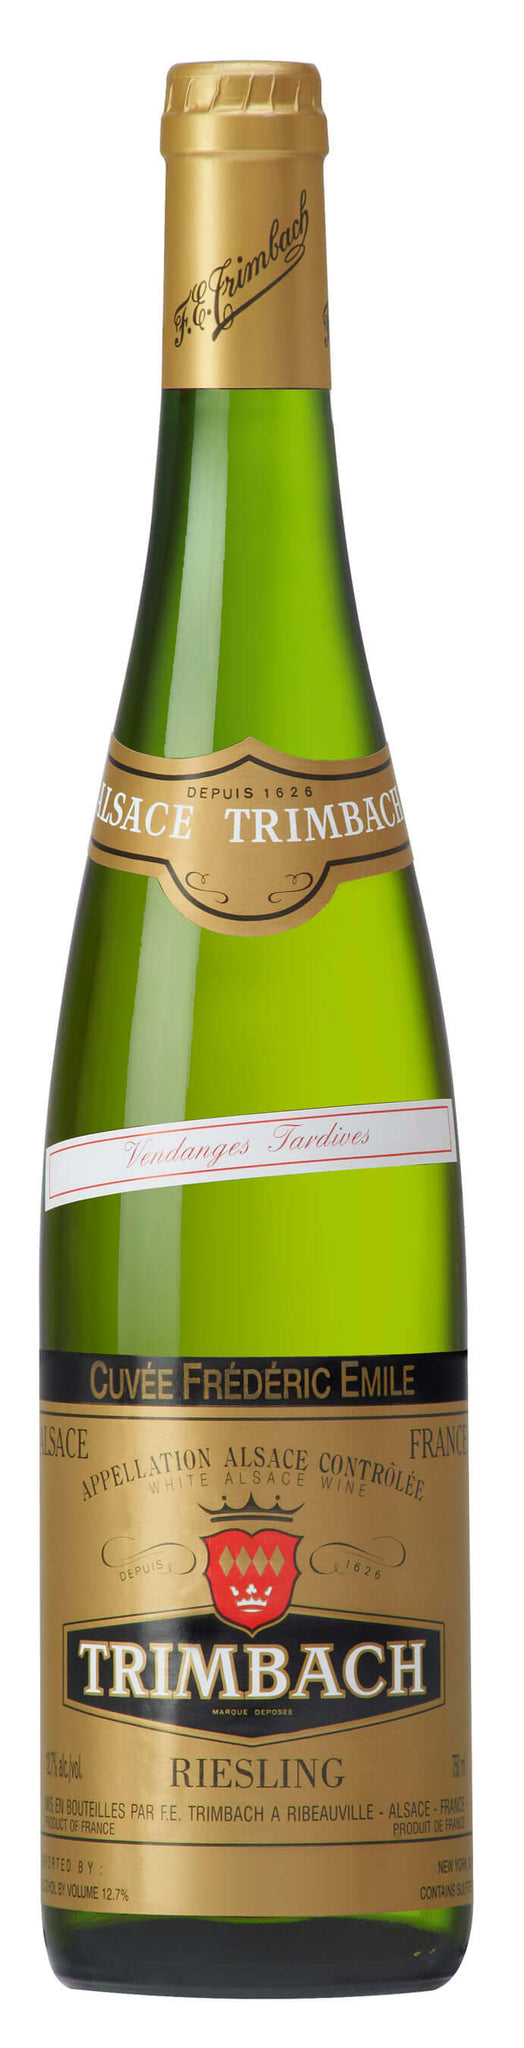 2015 Trimbach Riesling “Cuvée Frédéric Émile”